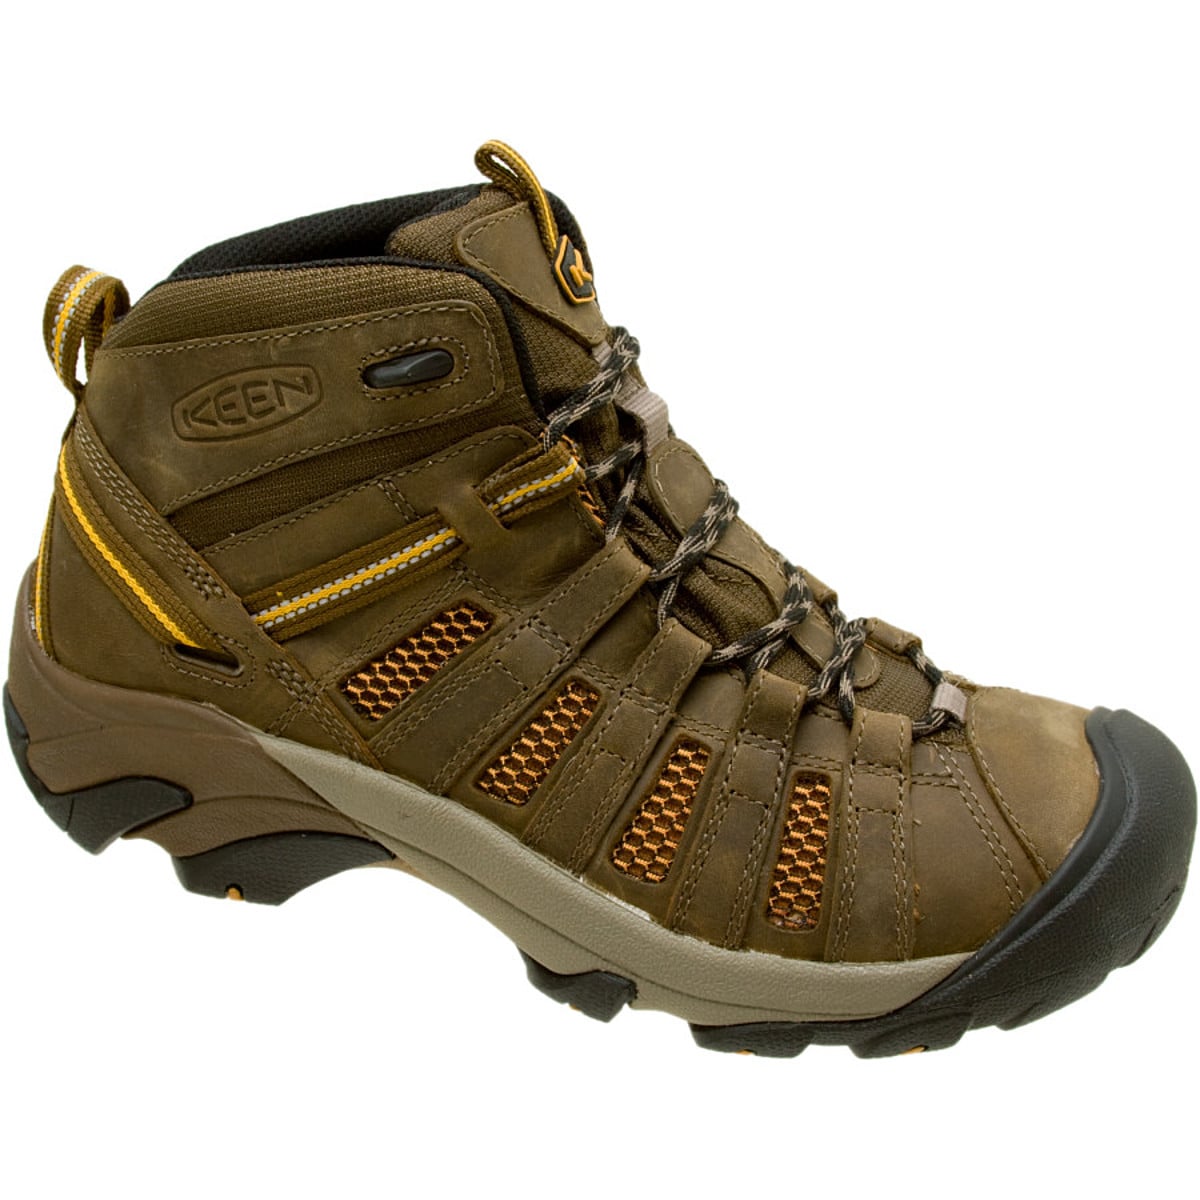 Voyageur Mid Hiking Boot - Men